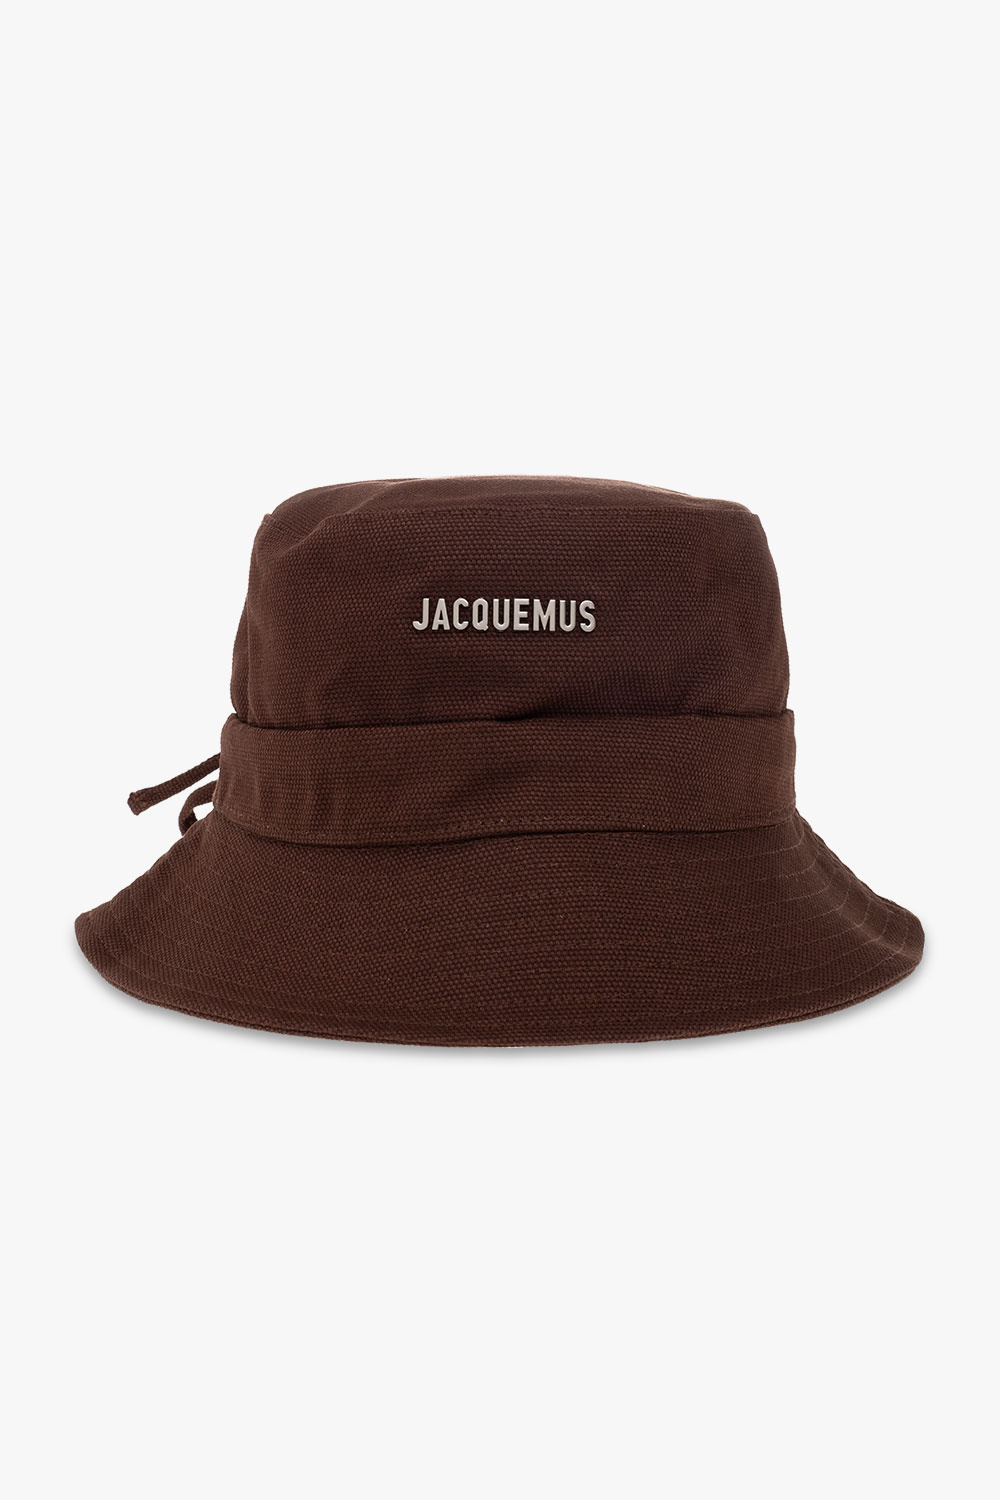 Jacquemus ‘Gadjo’ bucket Kingsnake hat